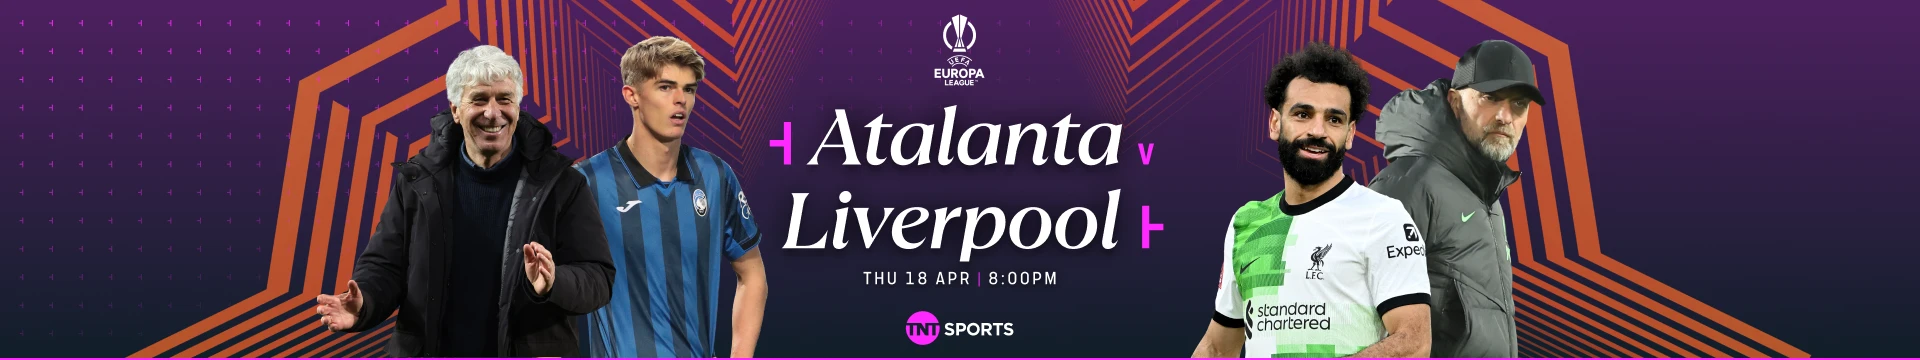 Atalanta v Liverpool Thursday 18 April at 8pm